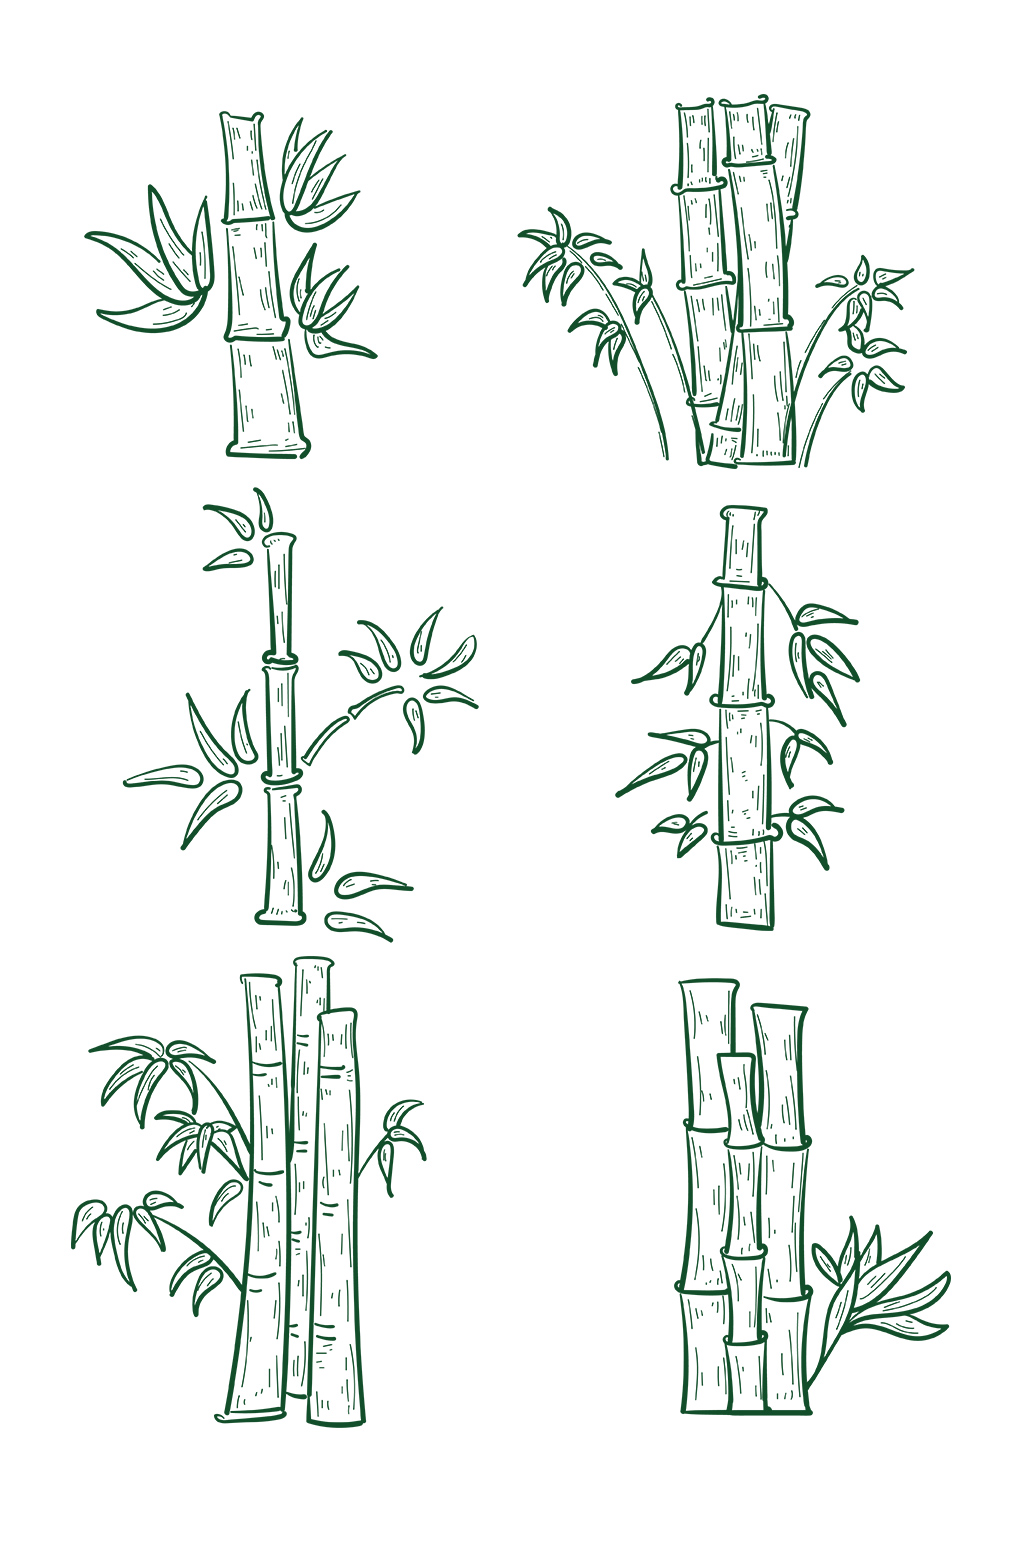 竹子手绘简单图片